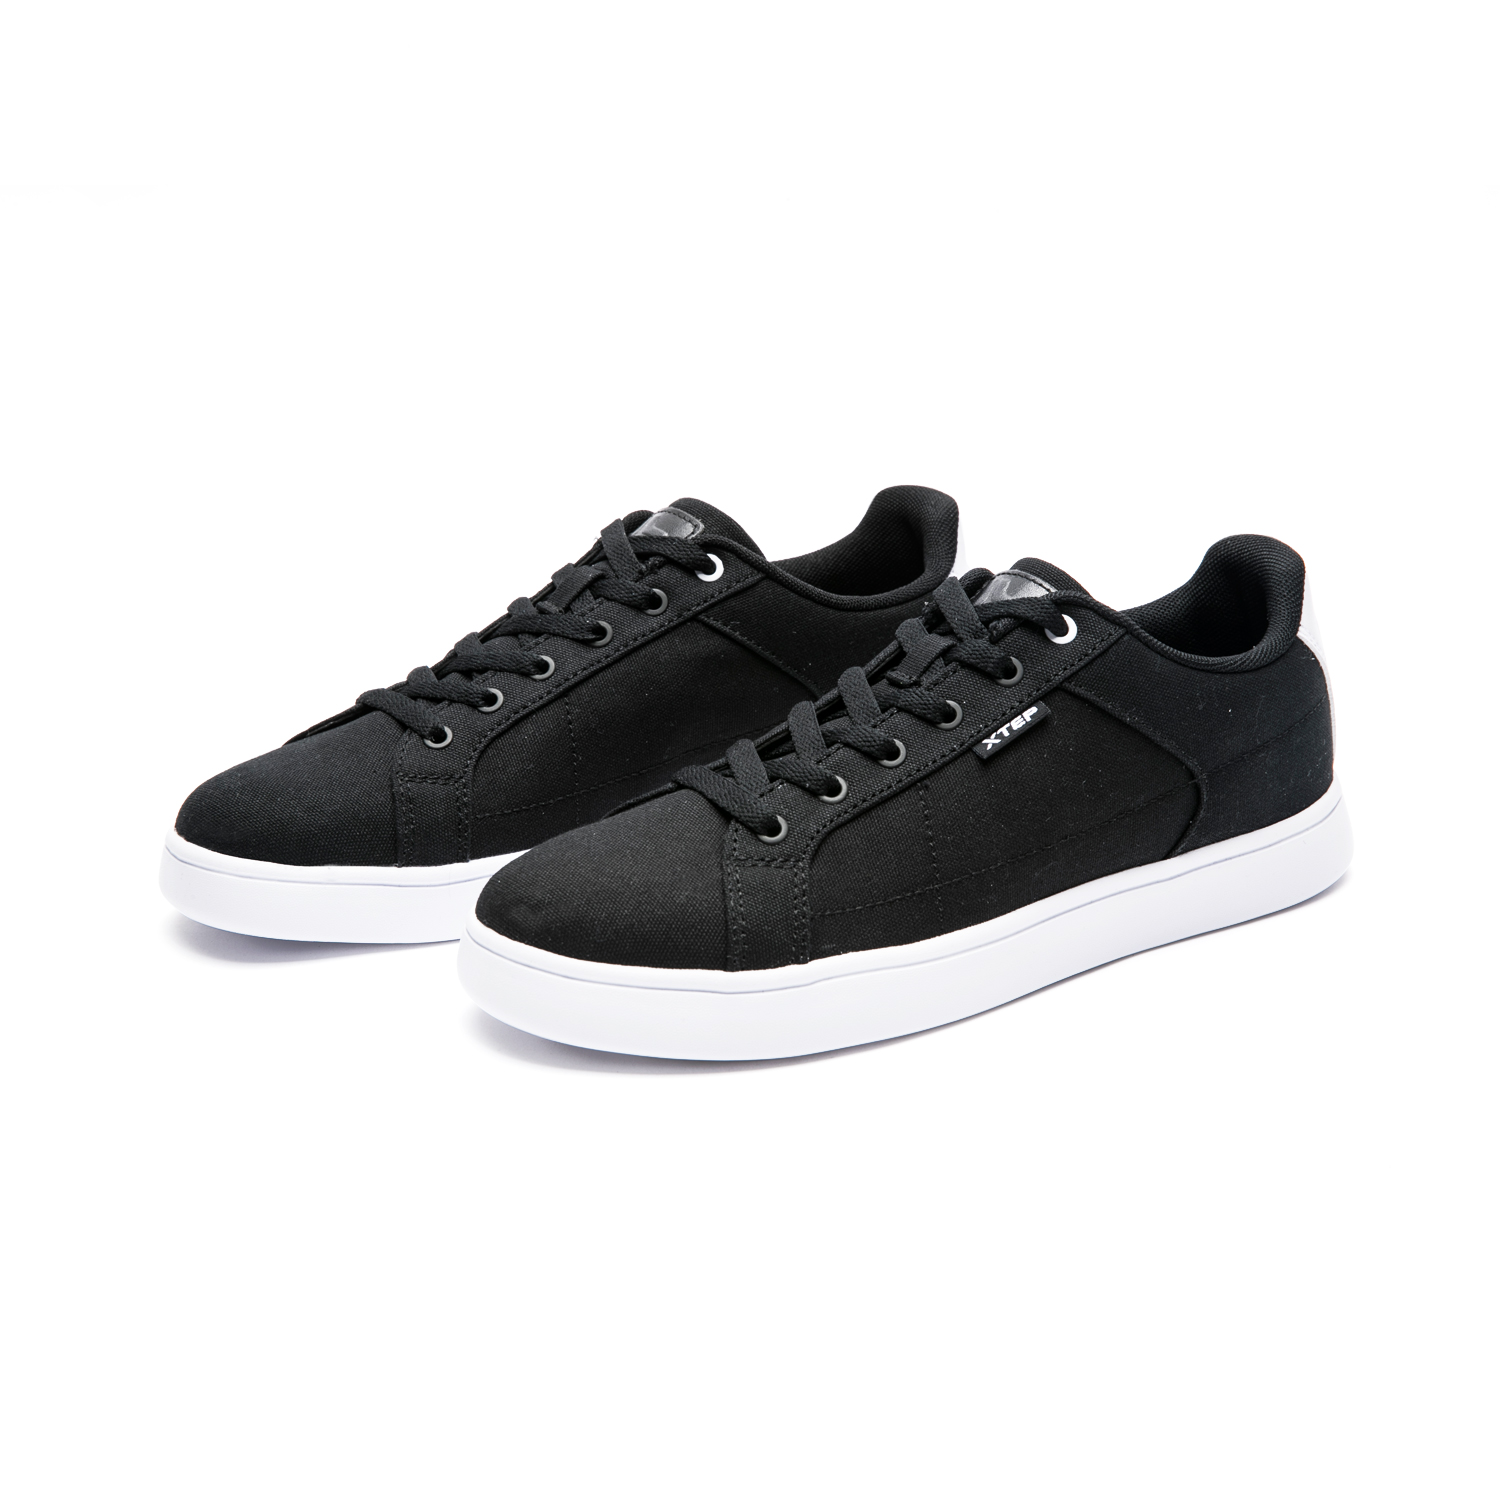 Buy Xtep Black White Skateboarding Shoes For Men's Online @ ₹1100 from ...